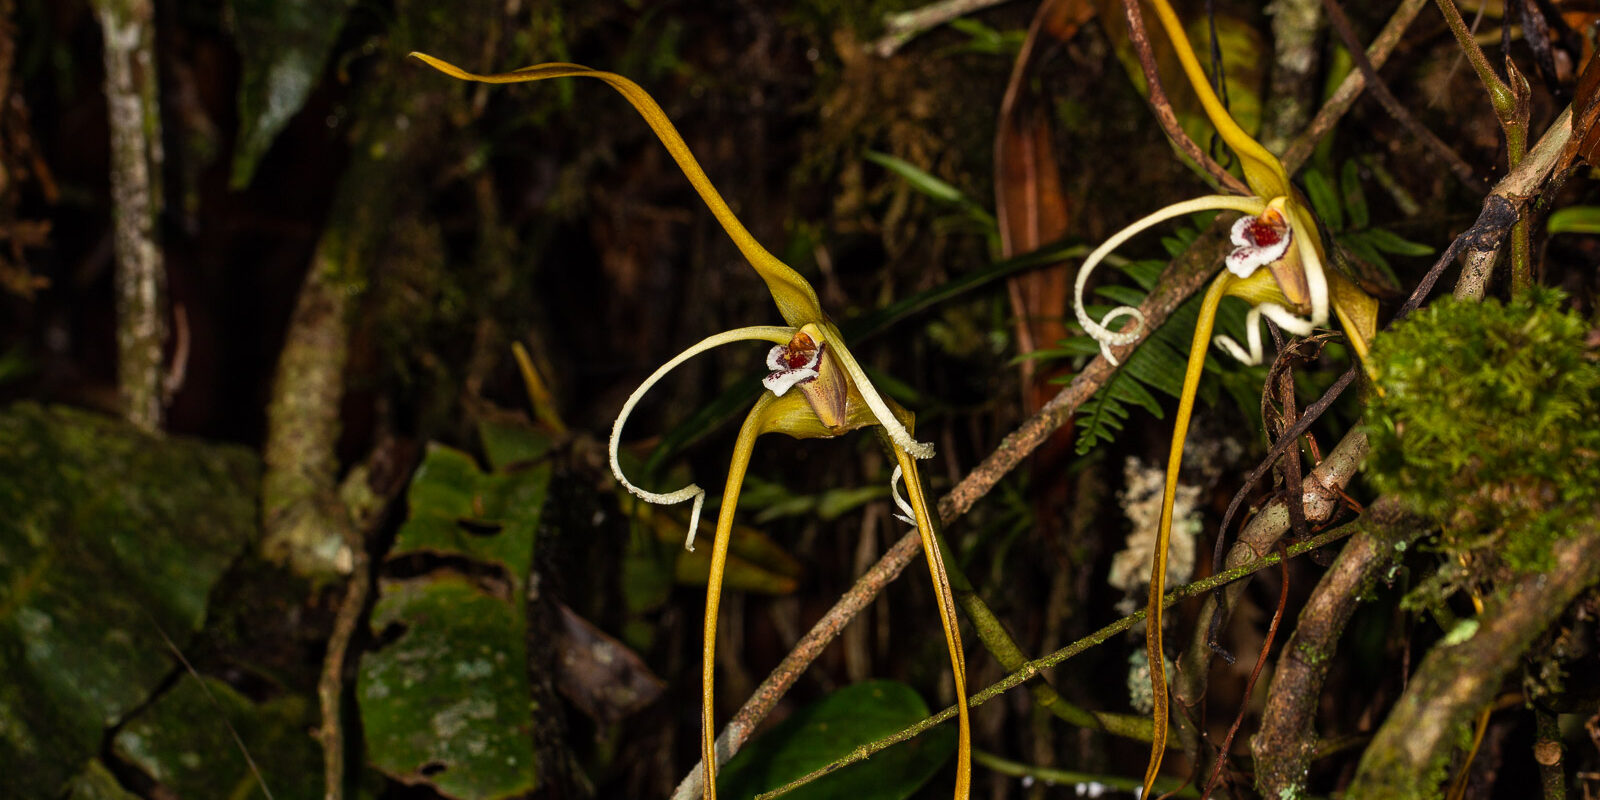 Maxillaria fractiflexa Rchb. f.